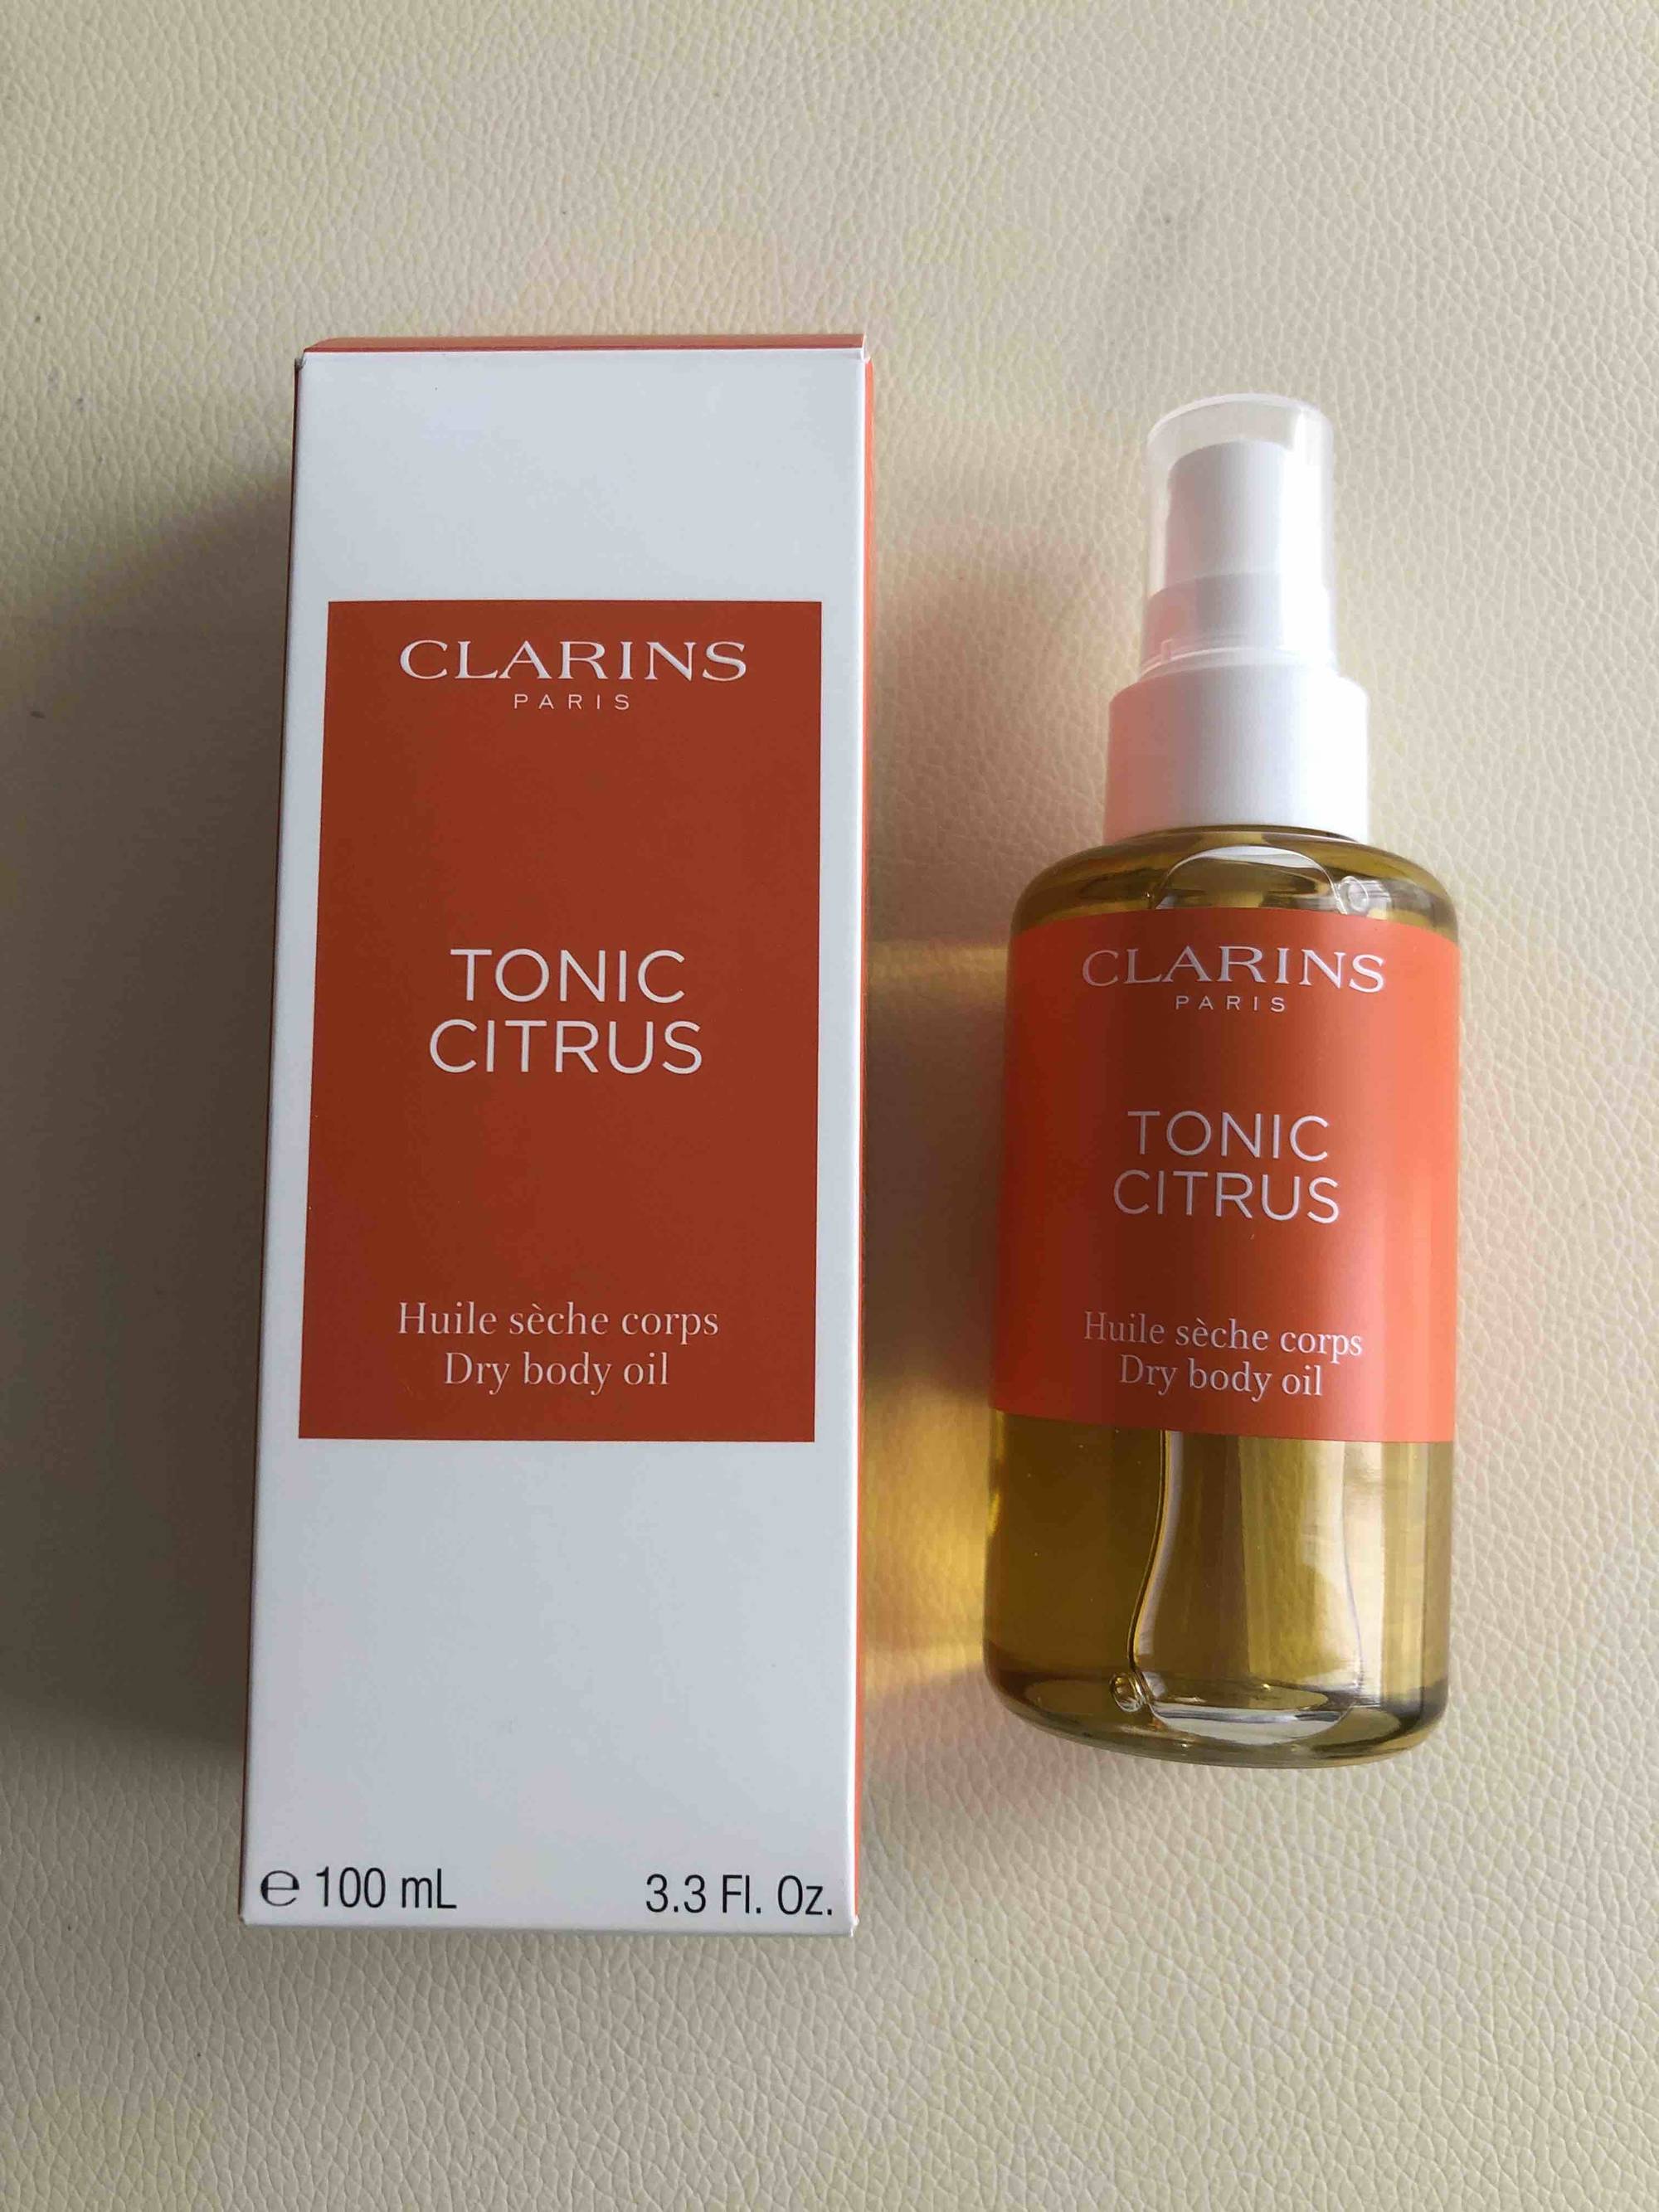 CLARINS - Tonic citrus - Huile sèche corps